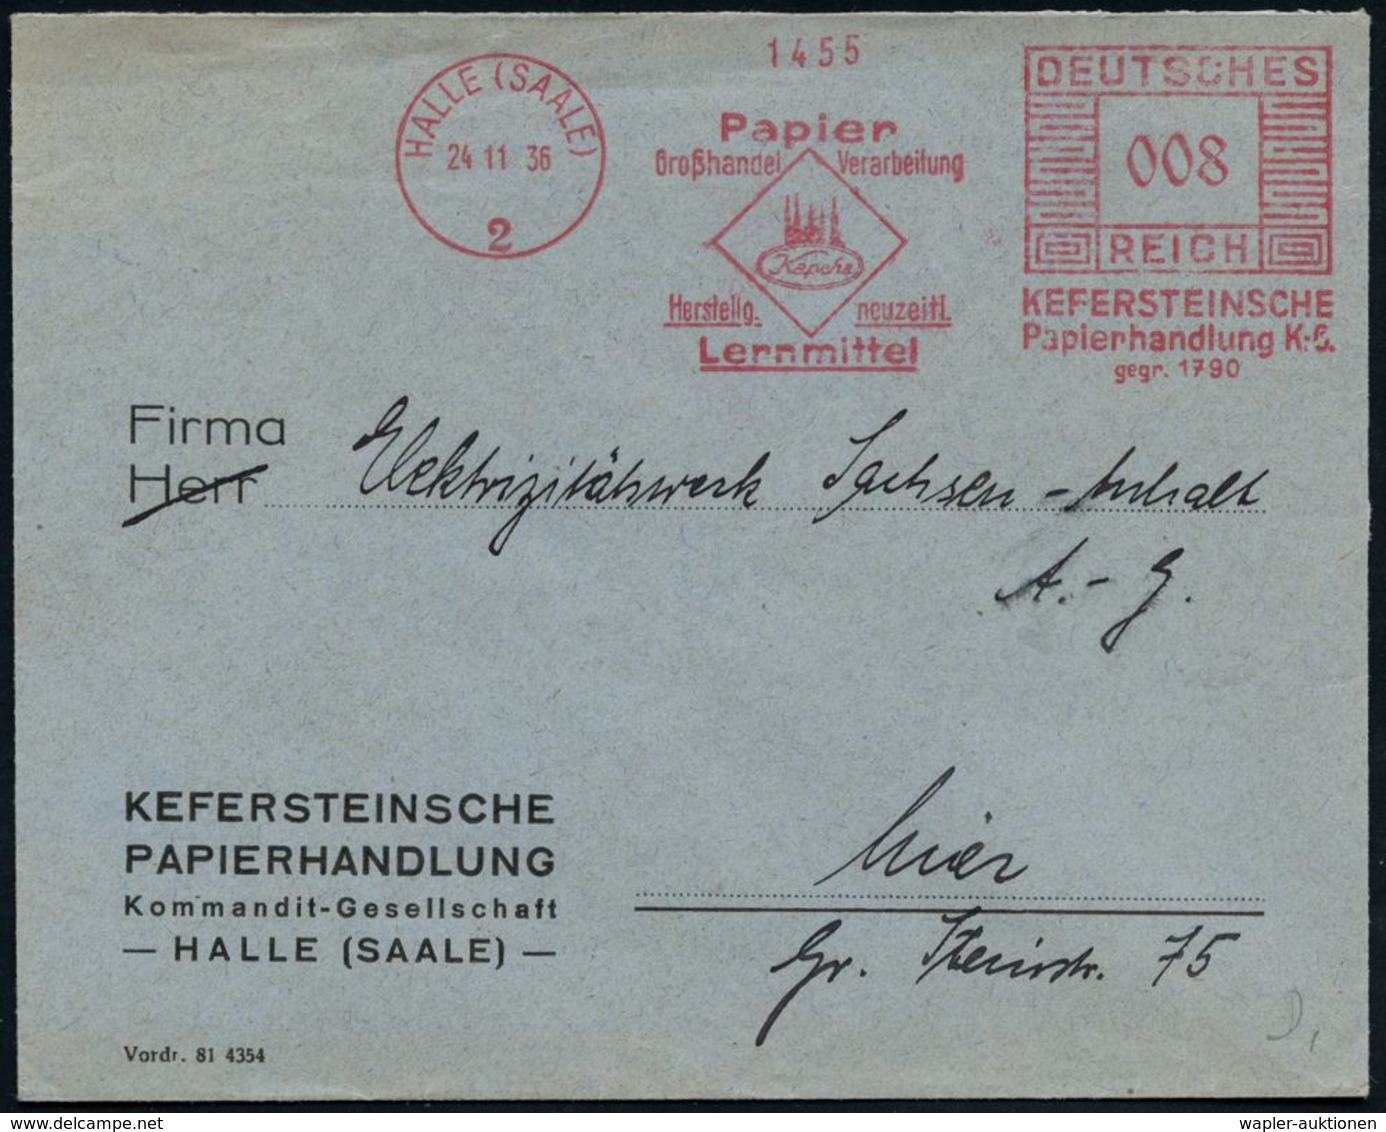 HALLE (SAALE)/ 2/ Papier/ ..Verarbeitung/ ..neuzeitl./ Lernmittel/ KEFERSTEINSCHE/ Papierhandlung KG/ Gegr.1790 1936 (24 - Ohne Zuordnung